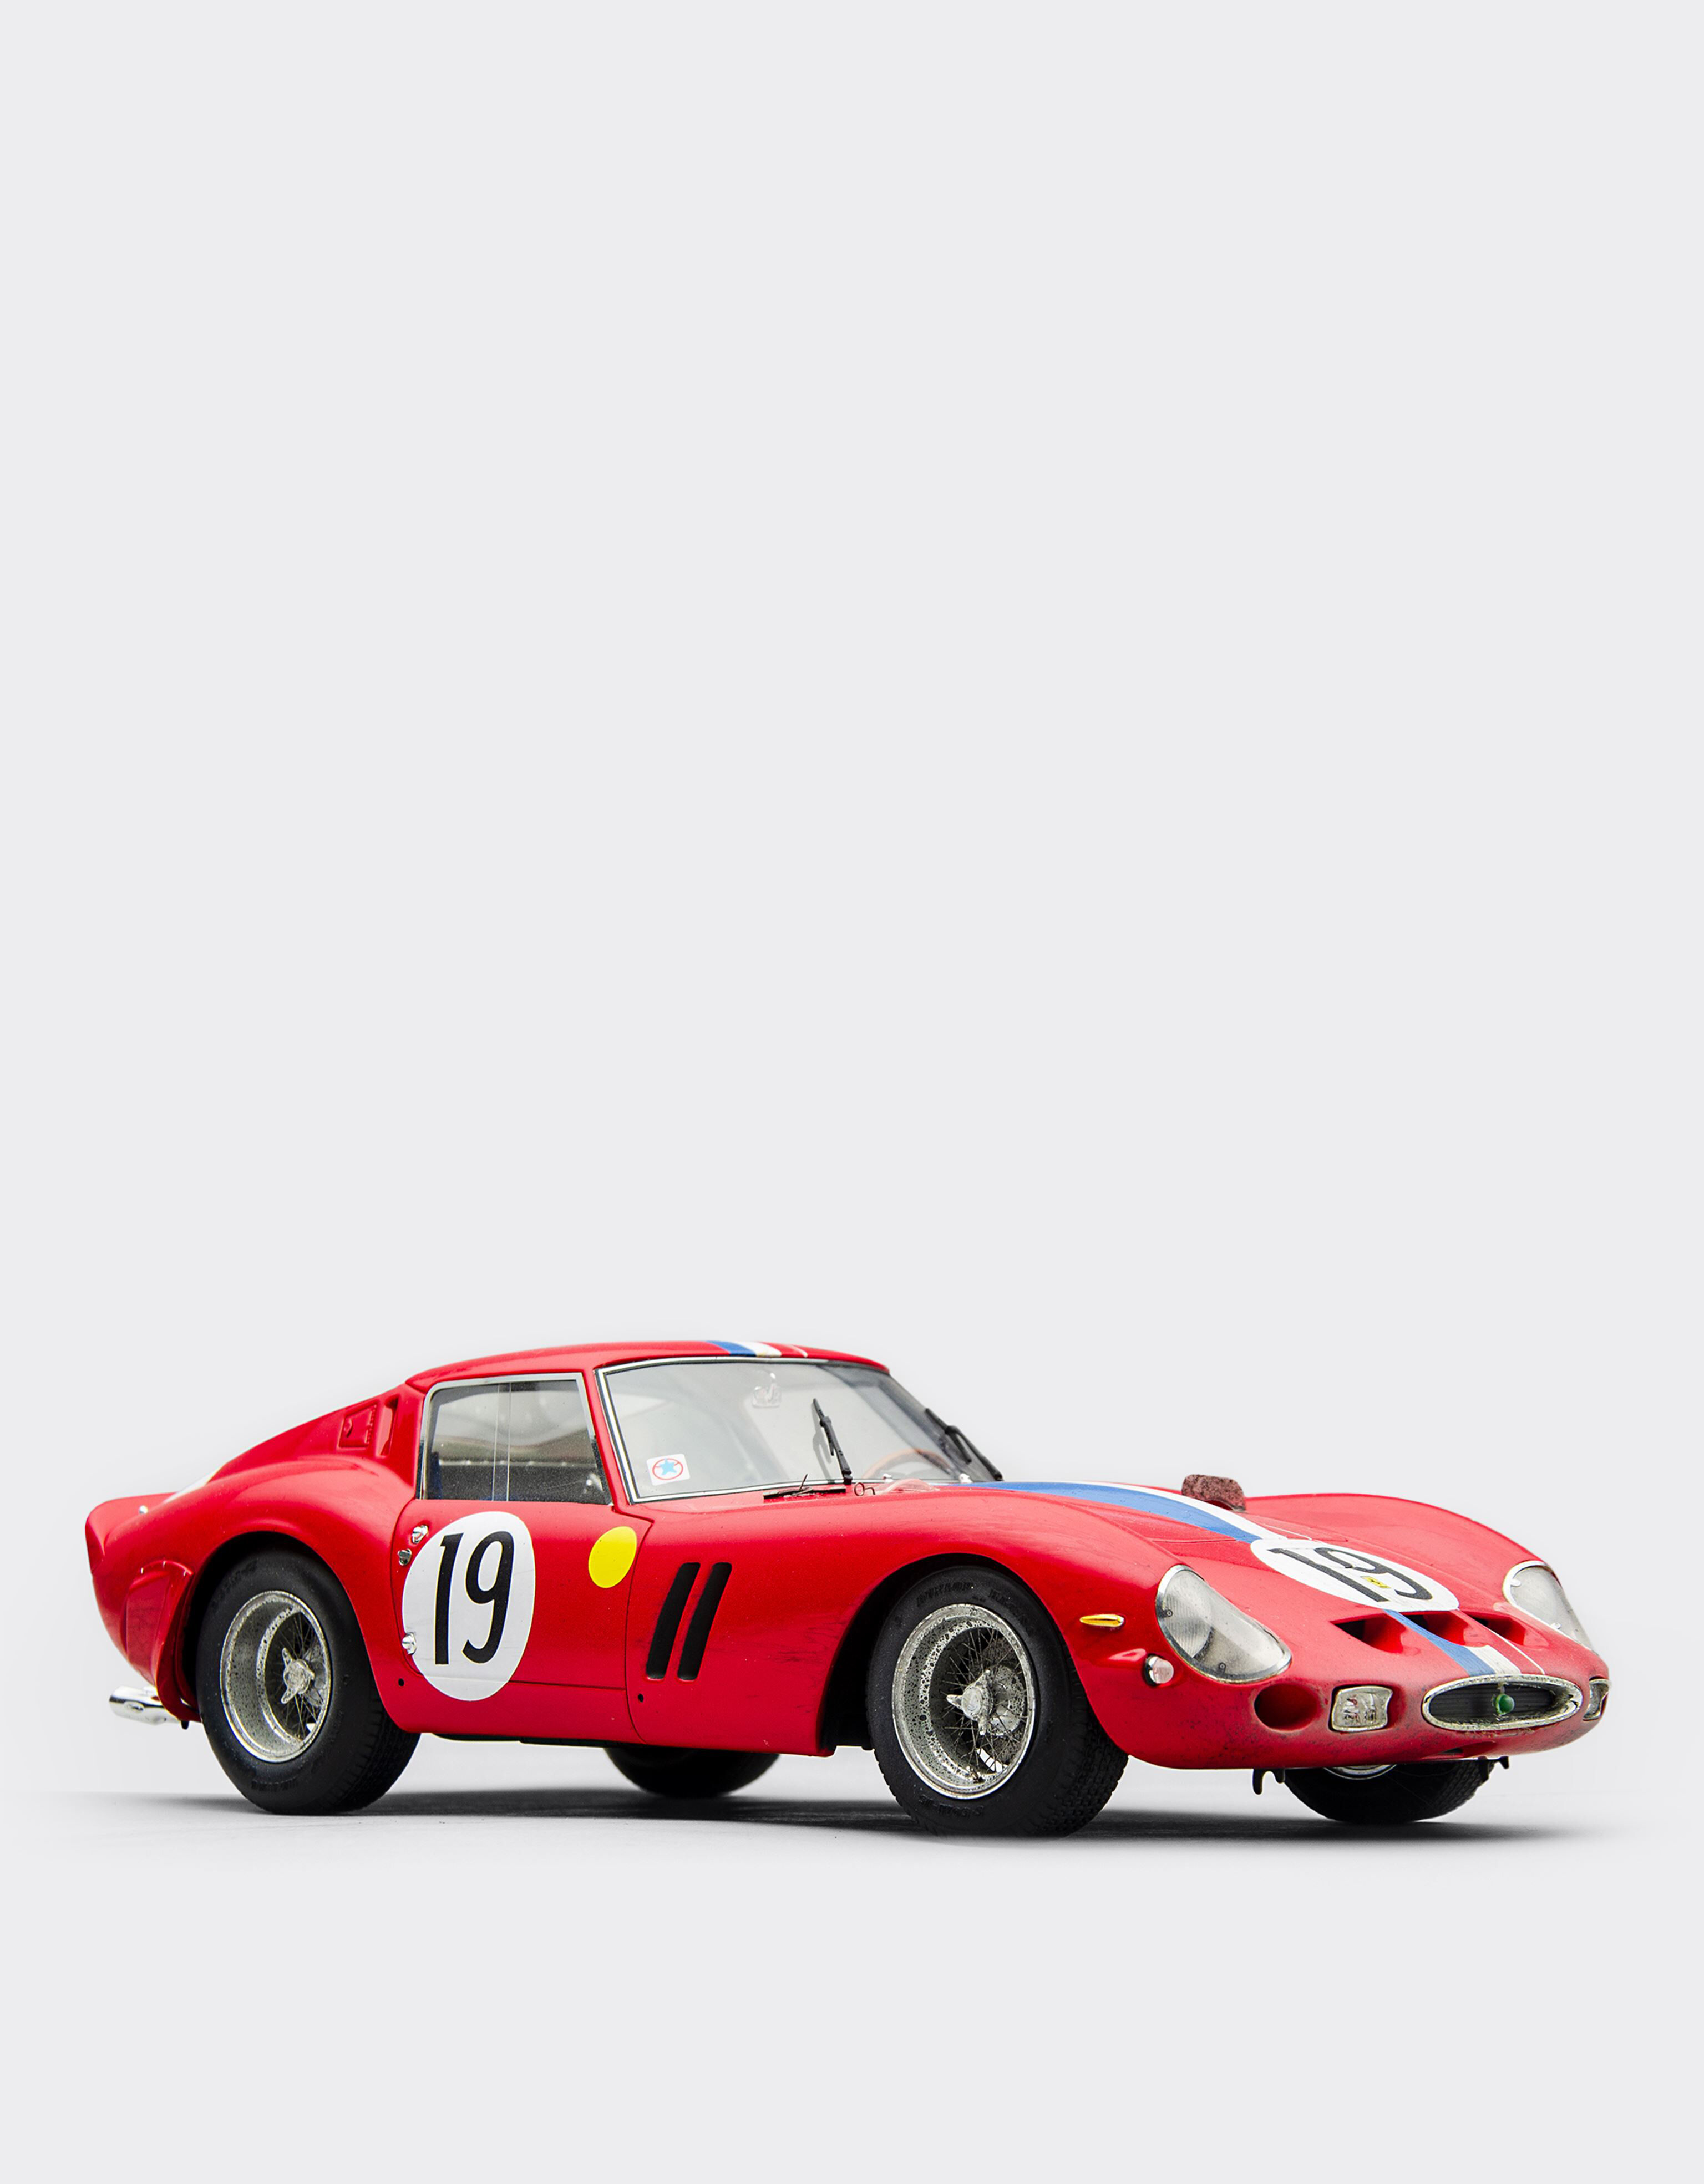 ${brand} Modellauto Ferrari 250 GTO 1962 Le Mans im Maßstab 1:18 ${colorDescription} ${masterID}